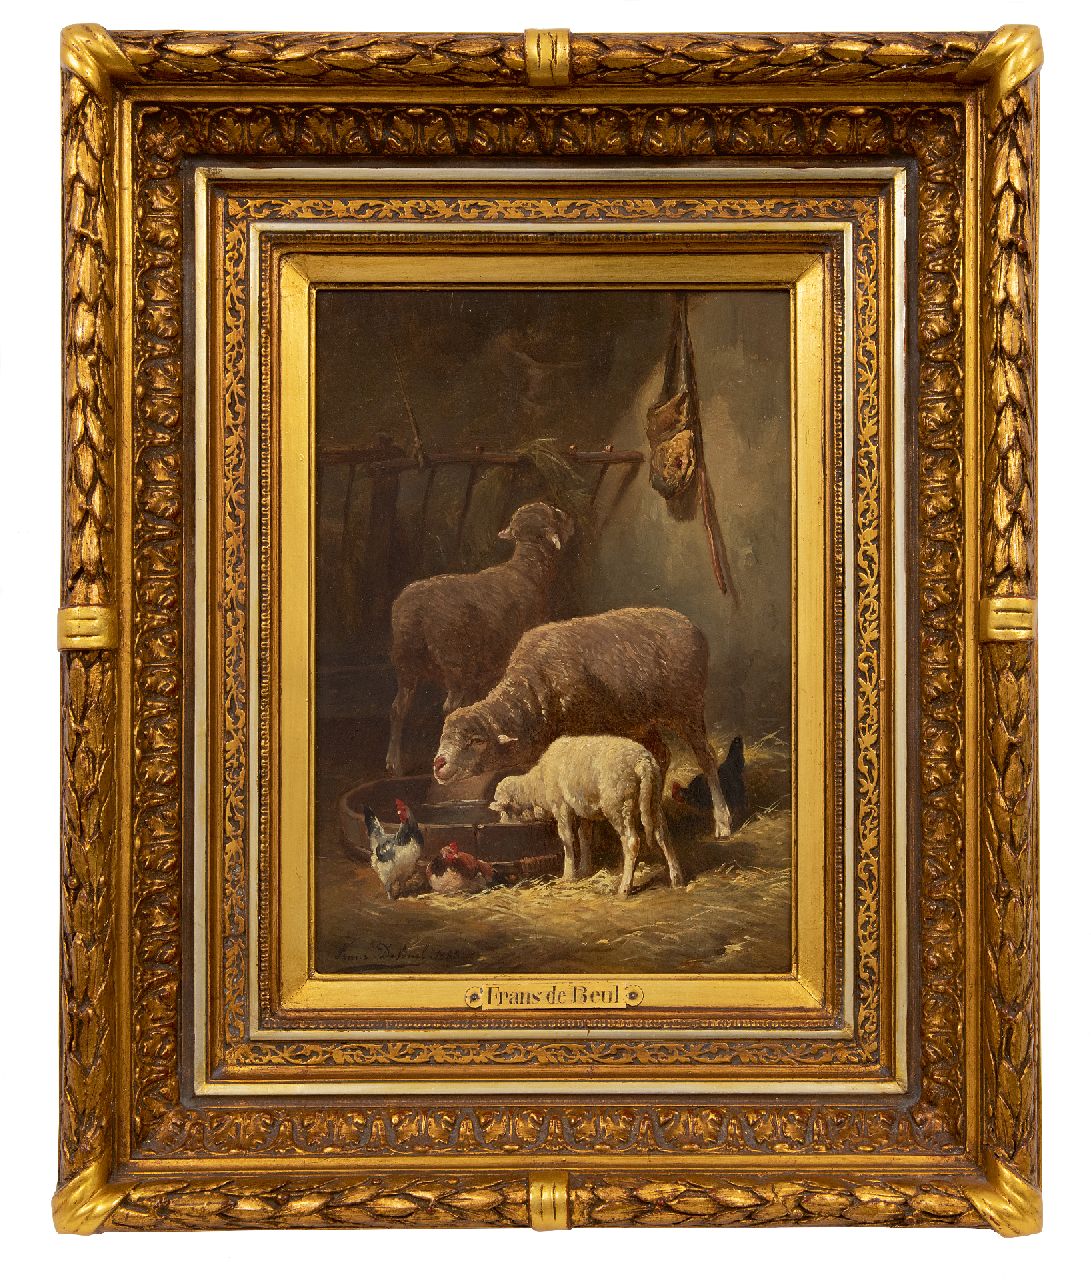 Beul F. de | Frans de Beul | Schilderijen te koop aangeboden | Schapen in de stal  (alleen tezamen), olieverf op paneel 34,3 x 23,2 cm, gesigneerd linksonder en gedateerd 1883